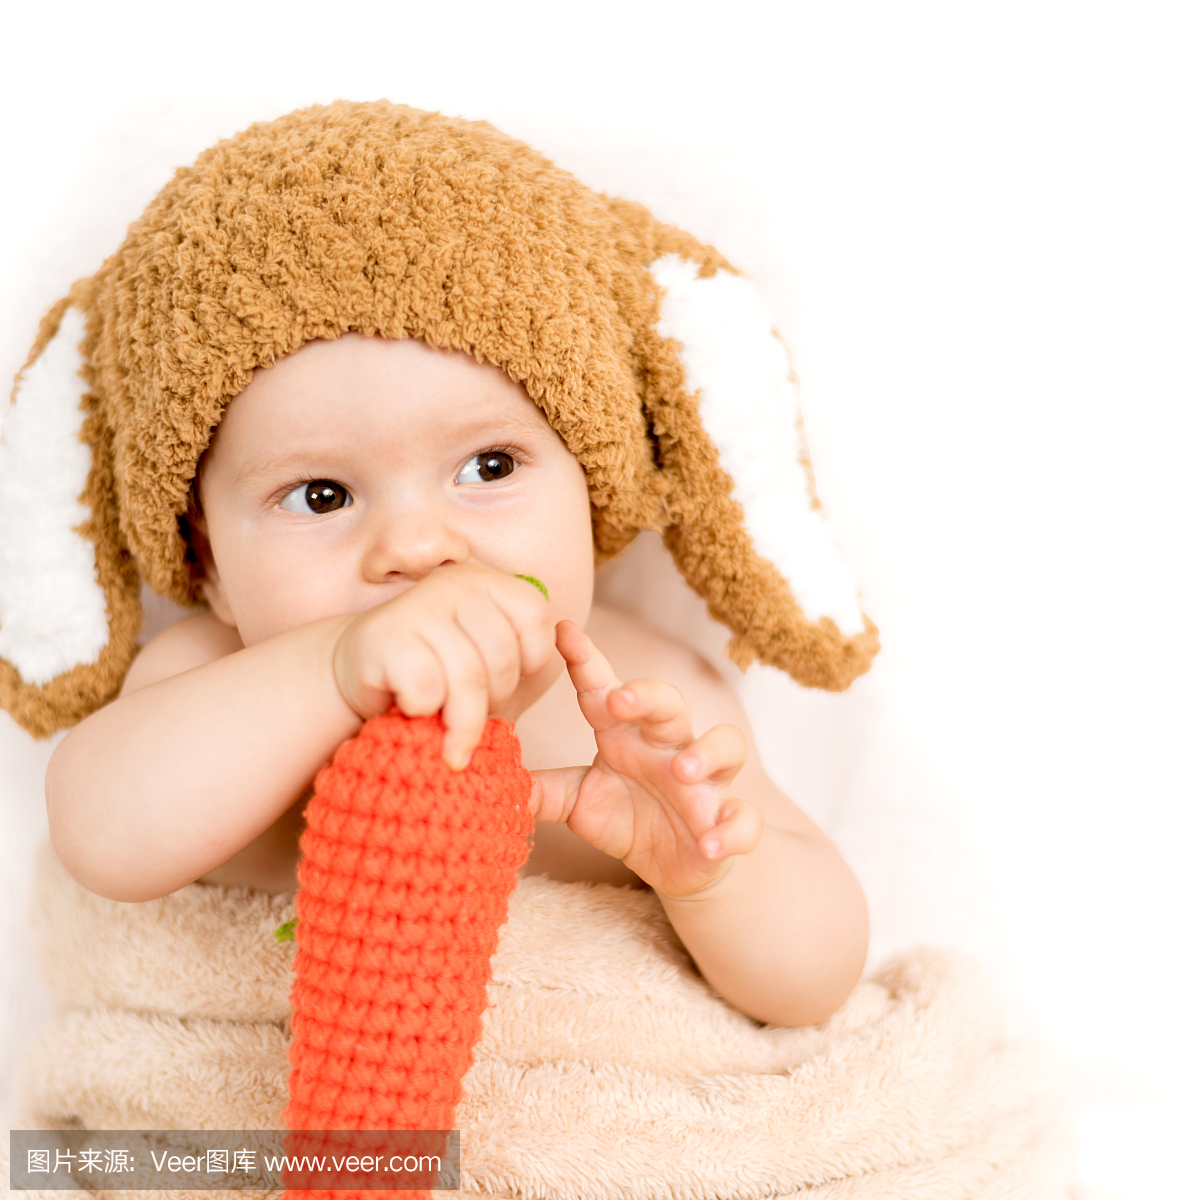 一个可爱的小宝宝戴着兔子帽子吃一个玩具胡萝